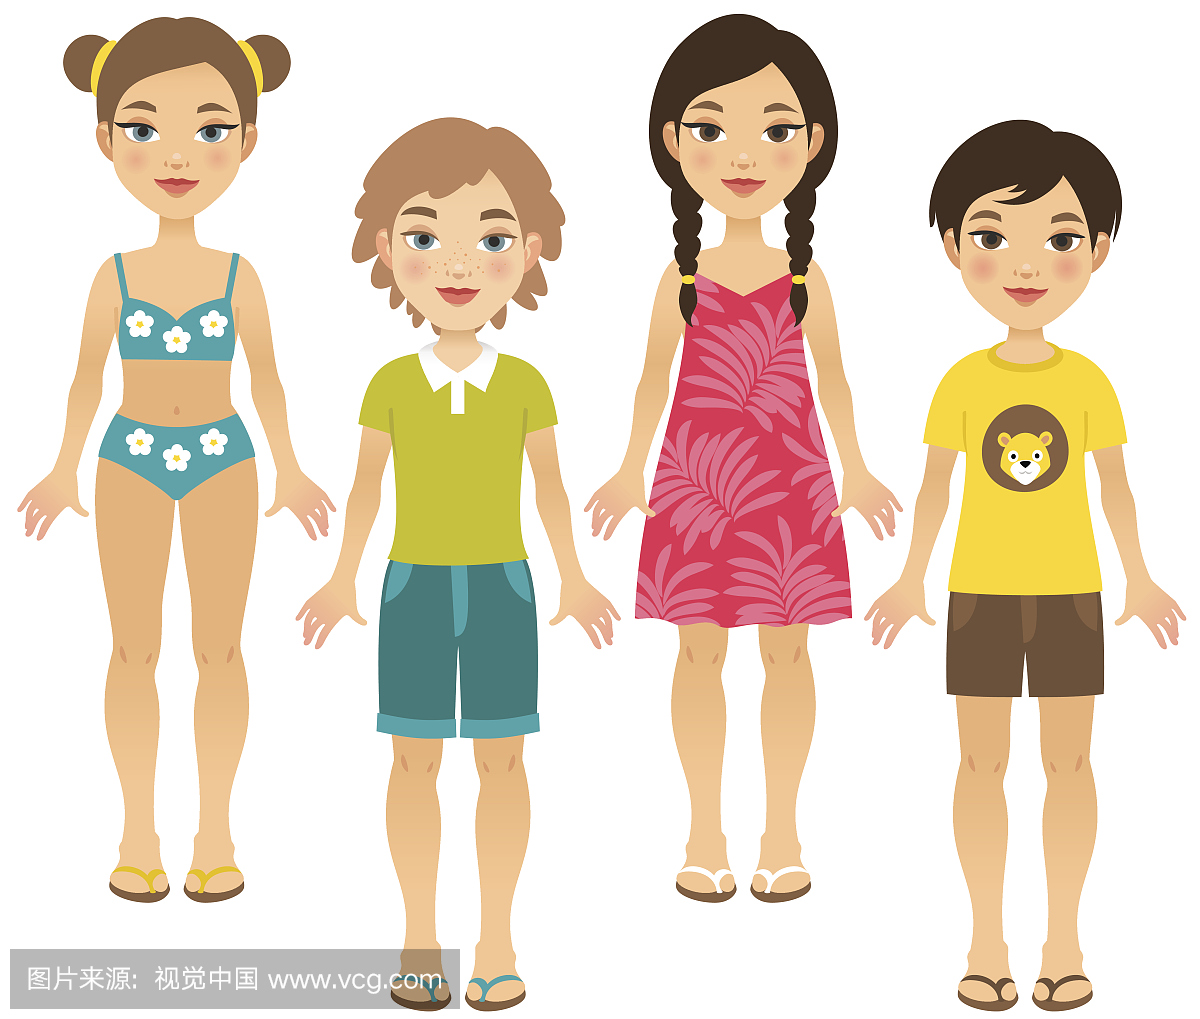 四名夏季服装的孩子